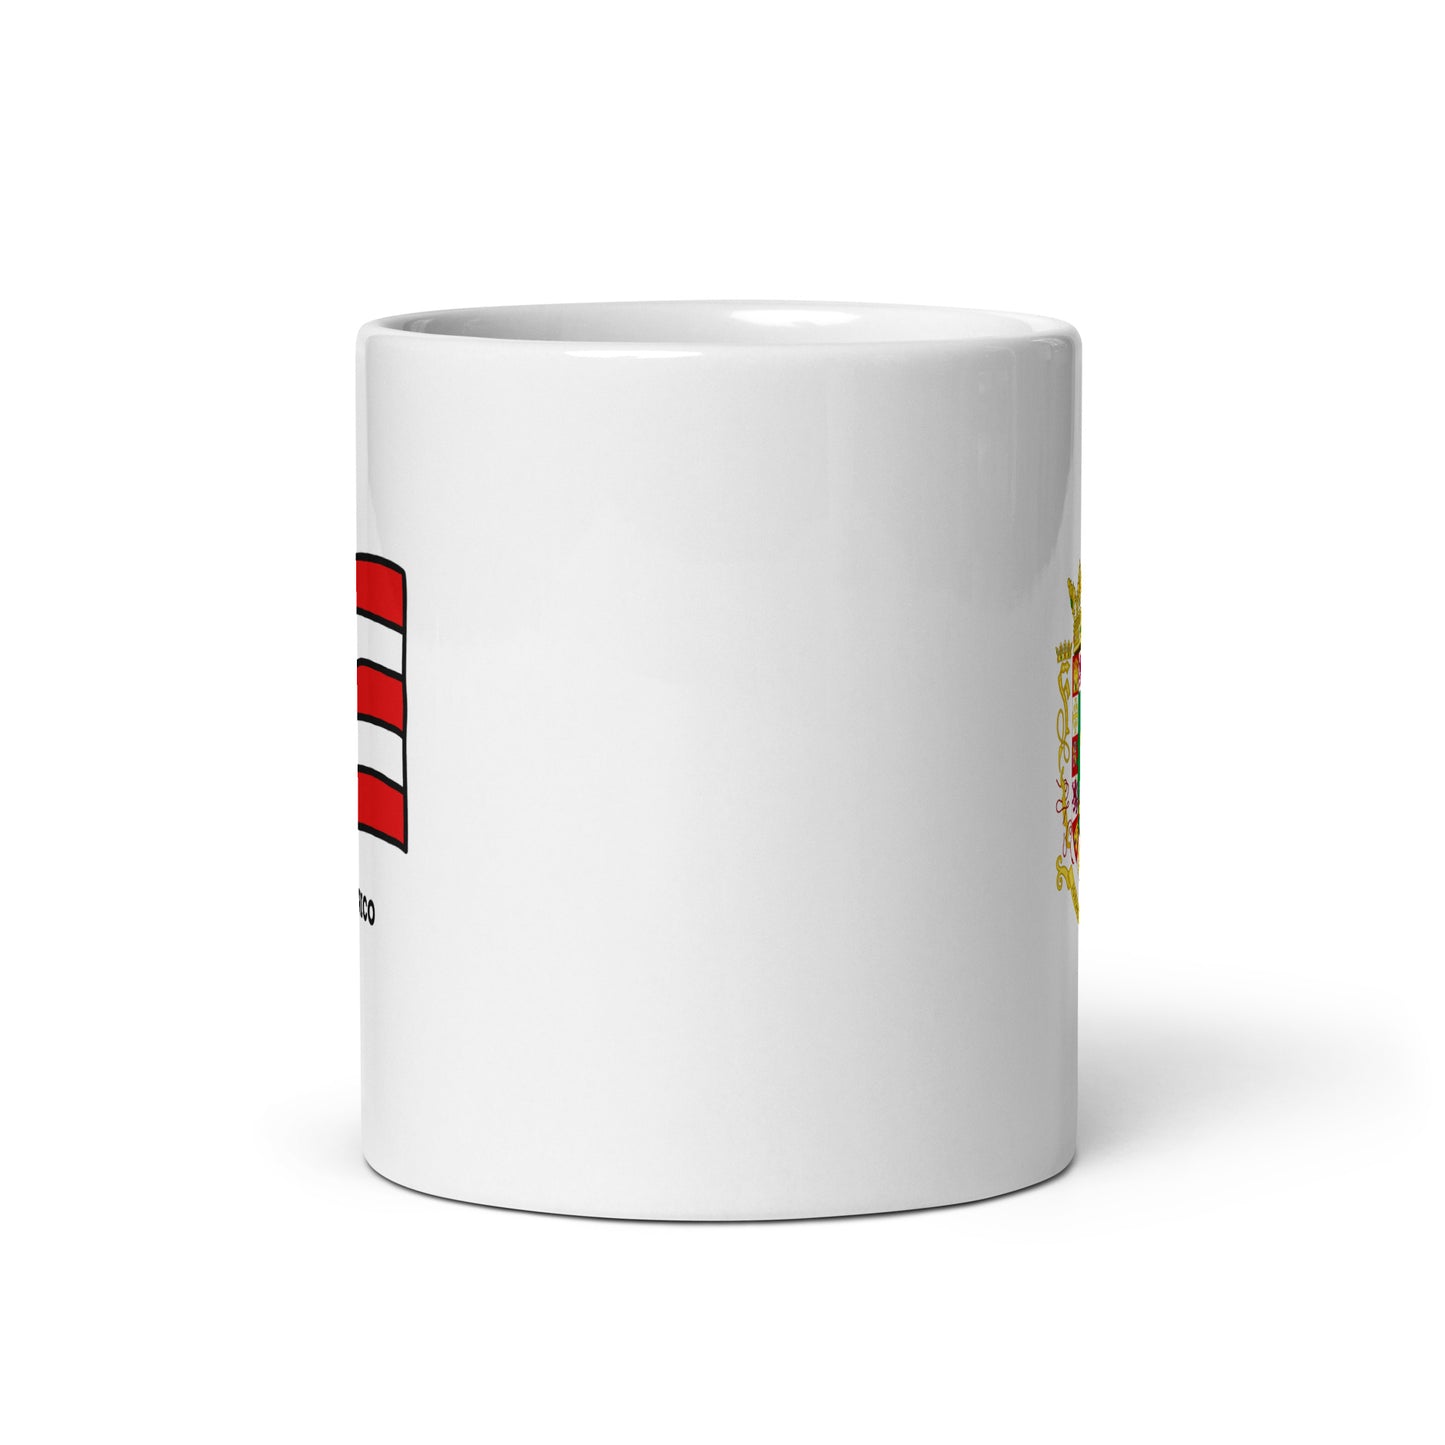 🇵🇷 Puerto Rico (Escudo y Bandera) Coffee Mug